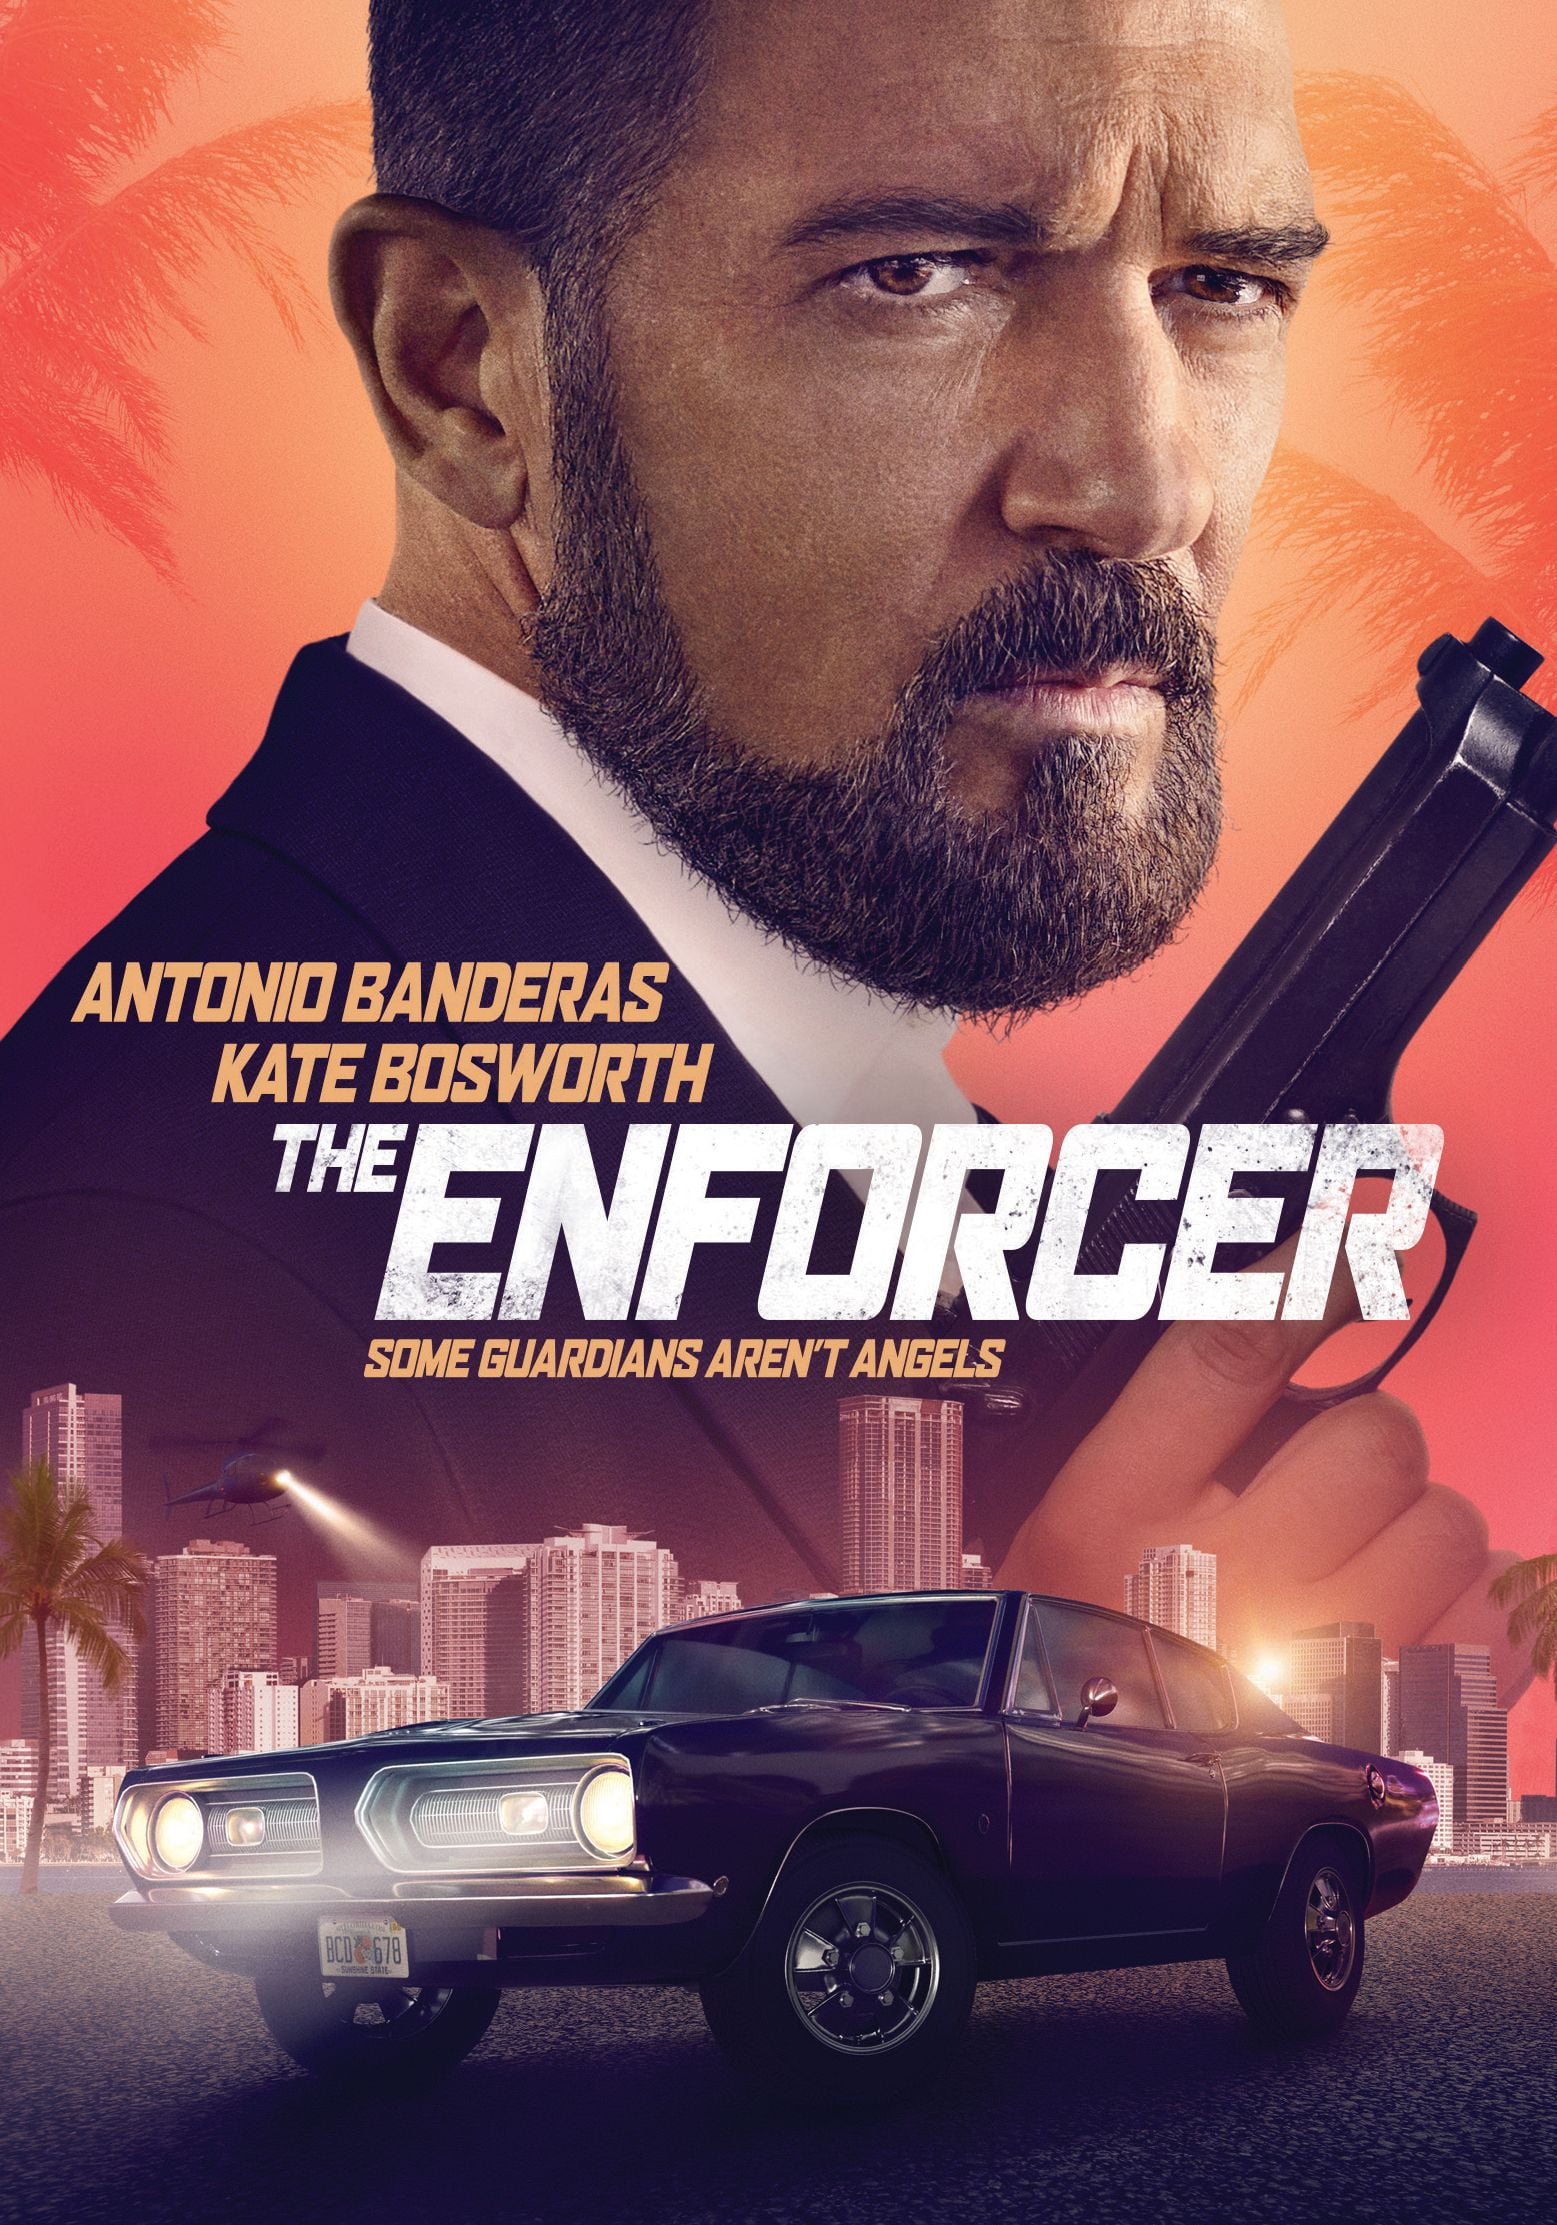 Screen Media Enforcer - Antonio Banderas (DVD)